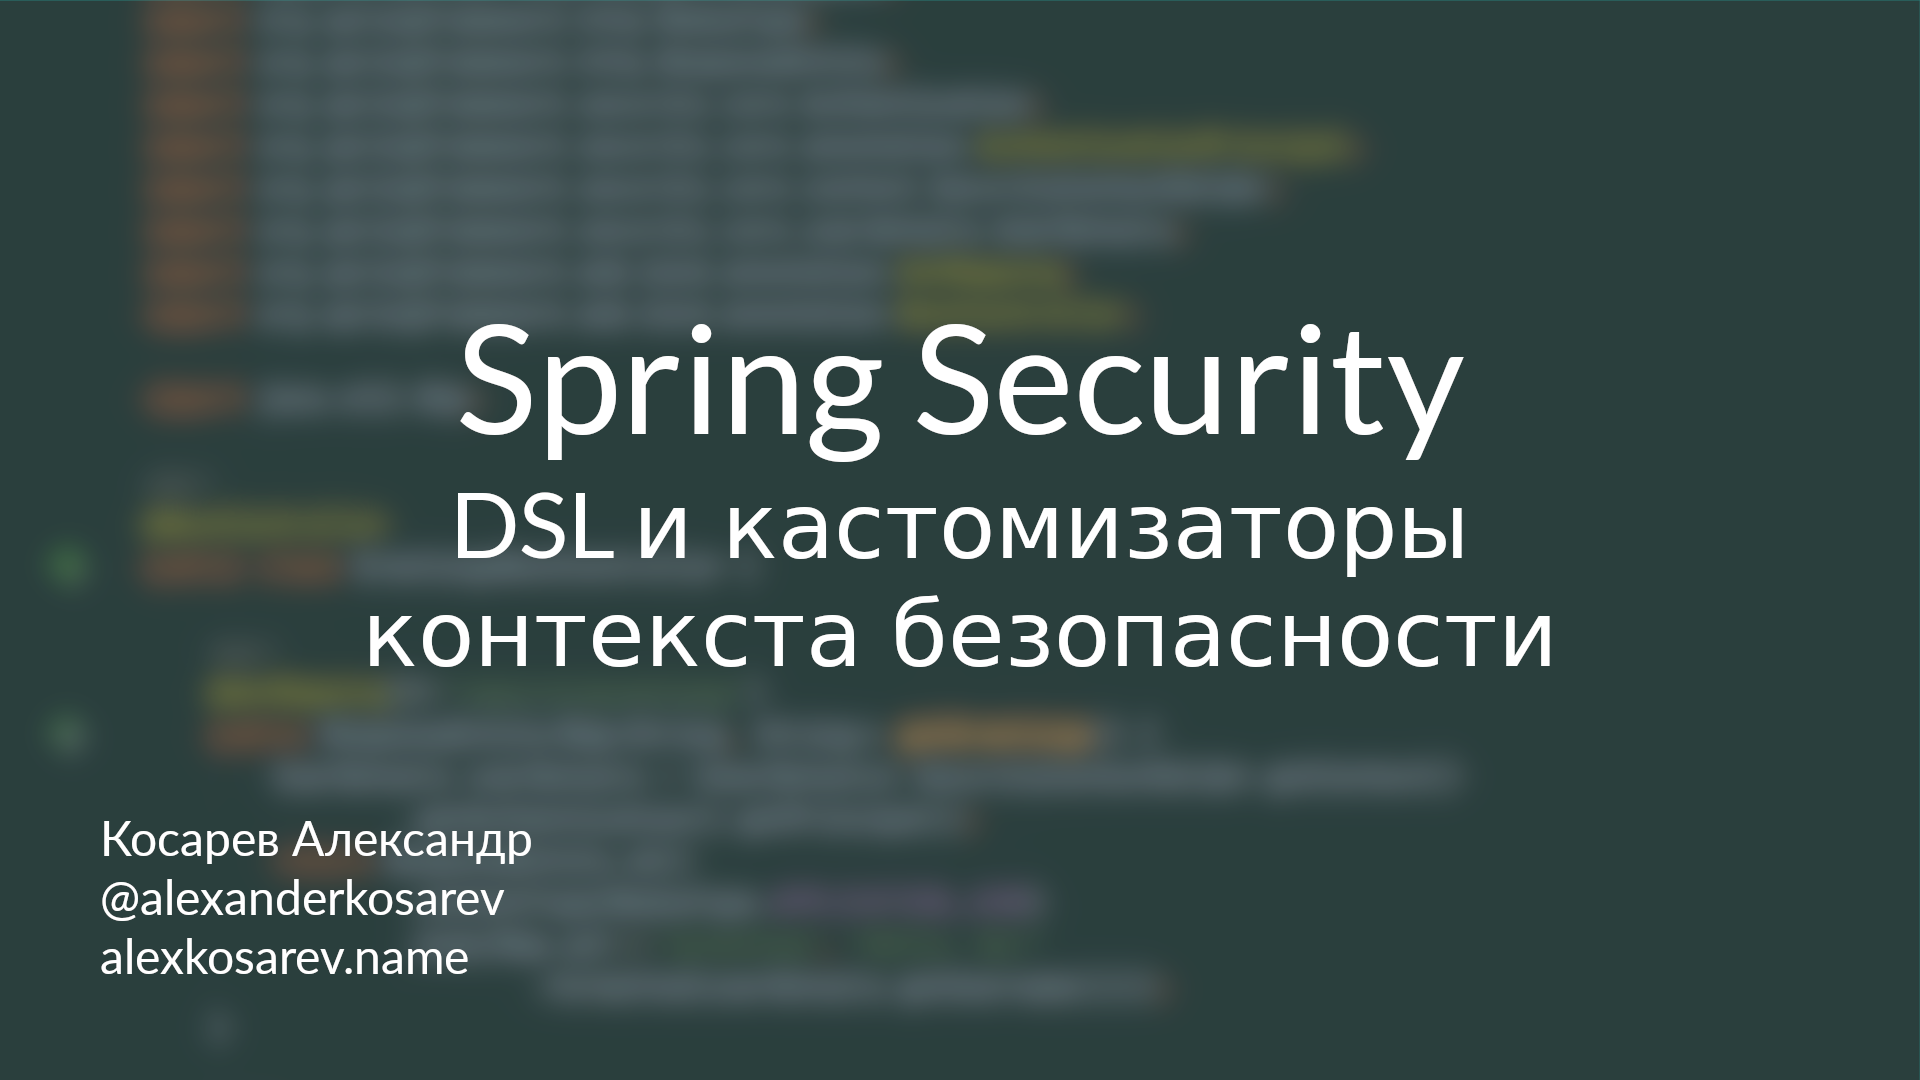 DSL и конфигураторы контекста безопасности - Spring Security в деталях